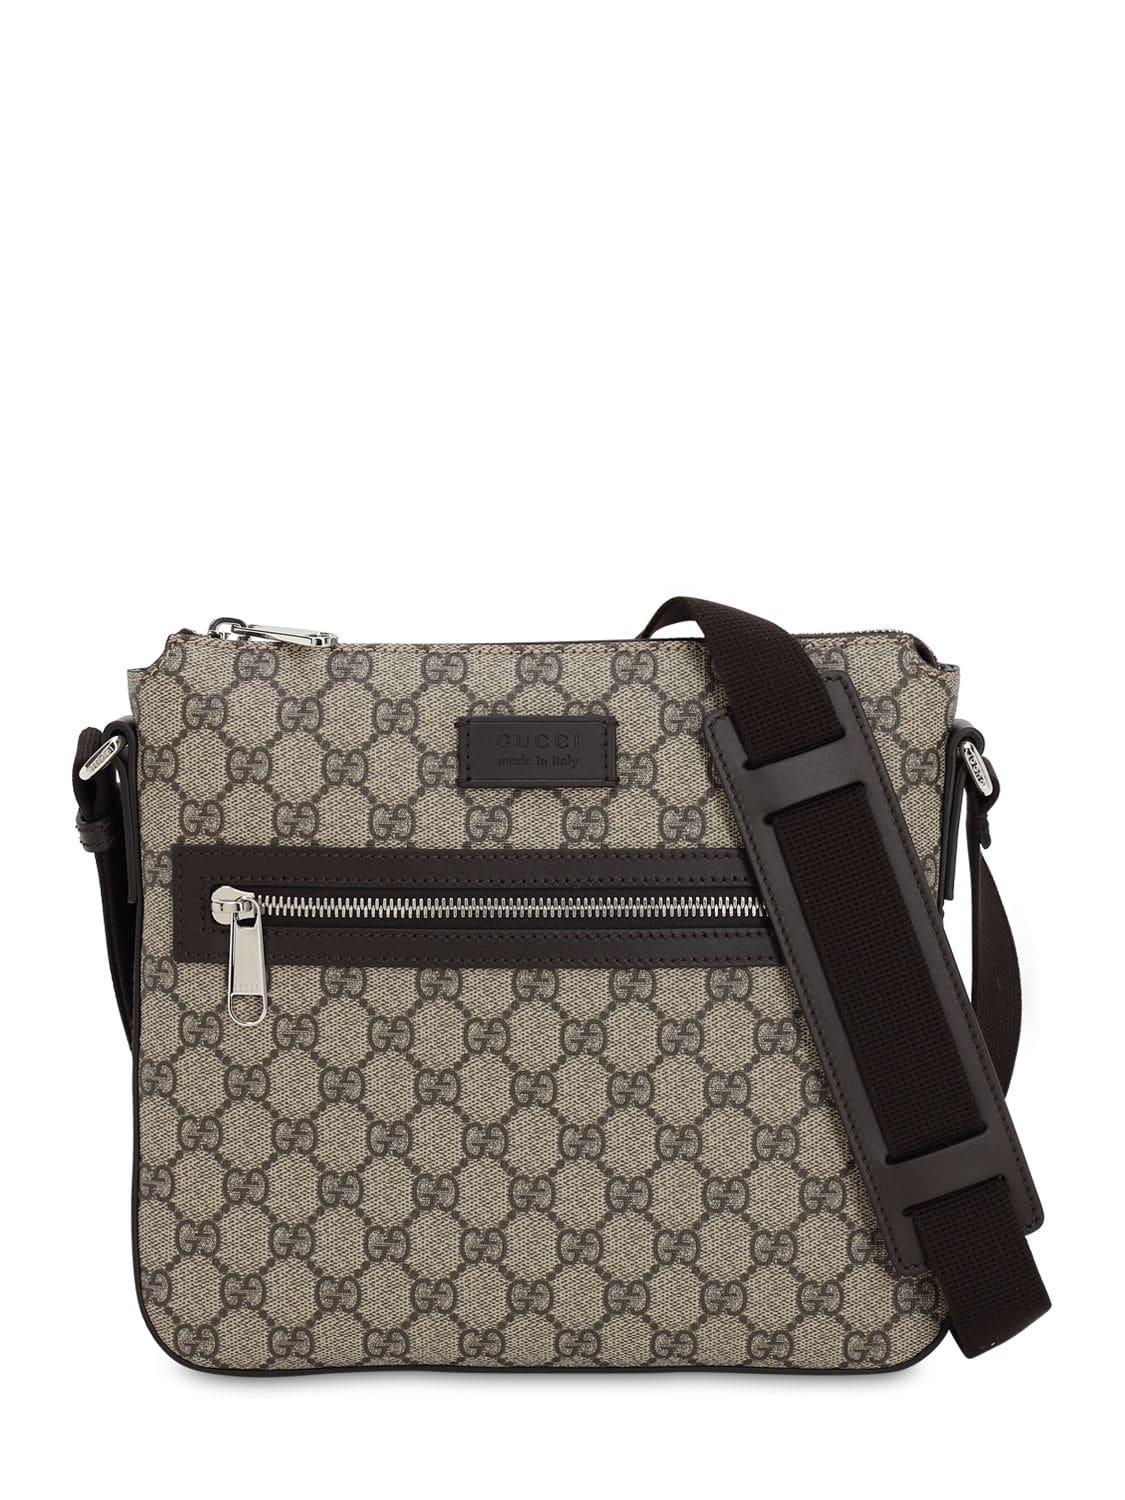 Gucci Gg Supreme Messenger Bag in Natural for Men | Lyst